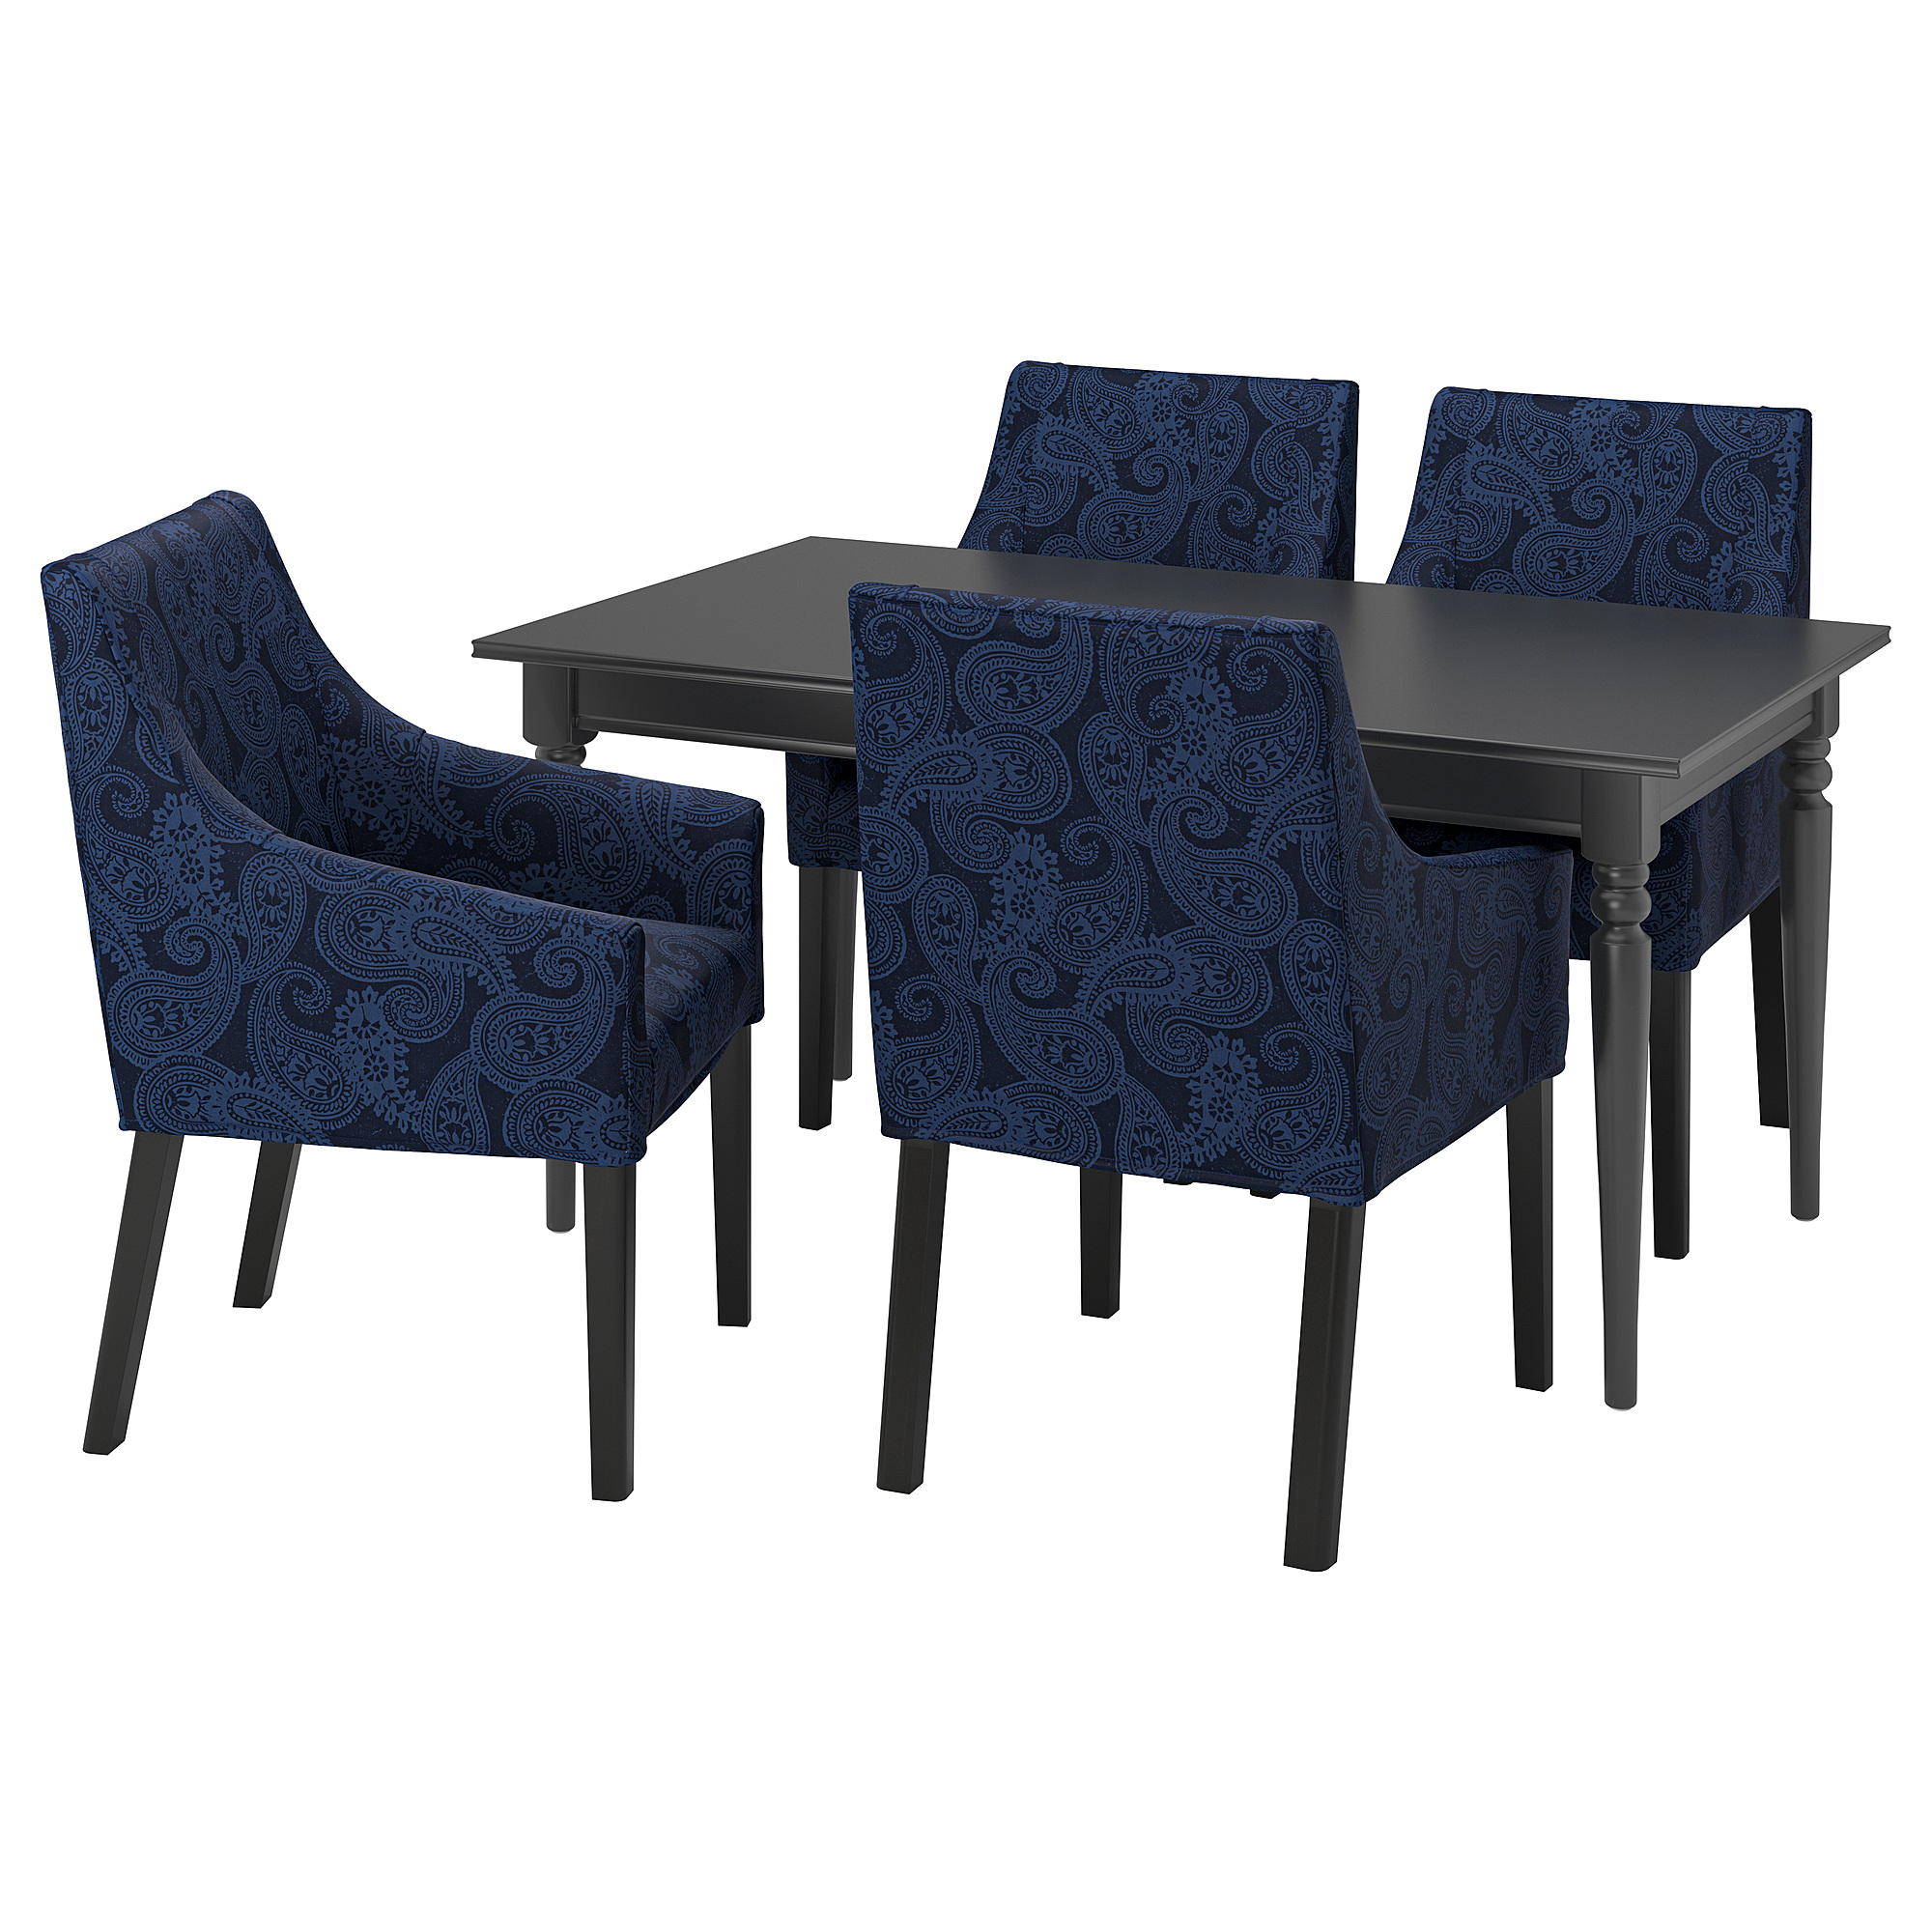 INGATORP/SAKARIAS table and 4 chairs